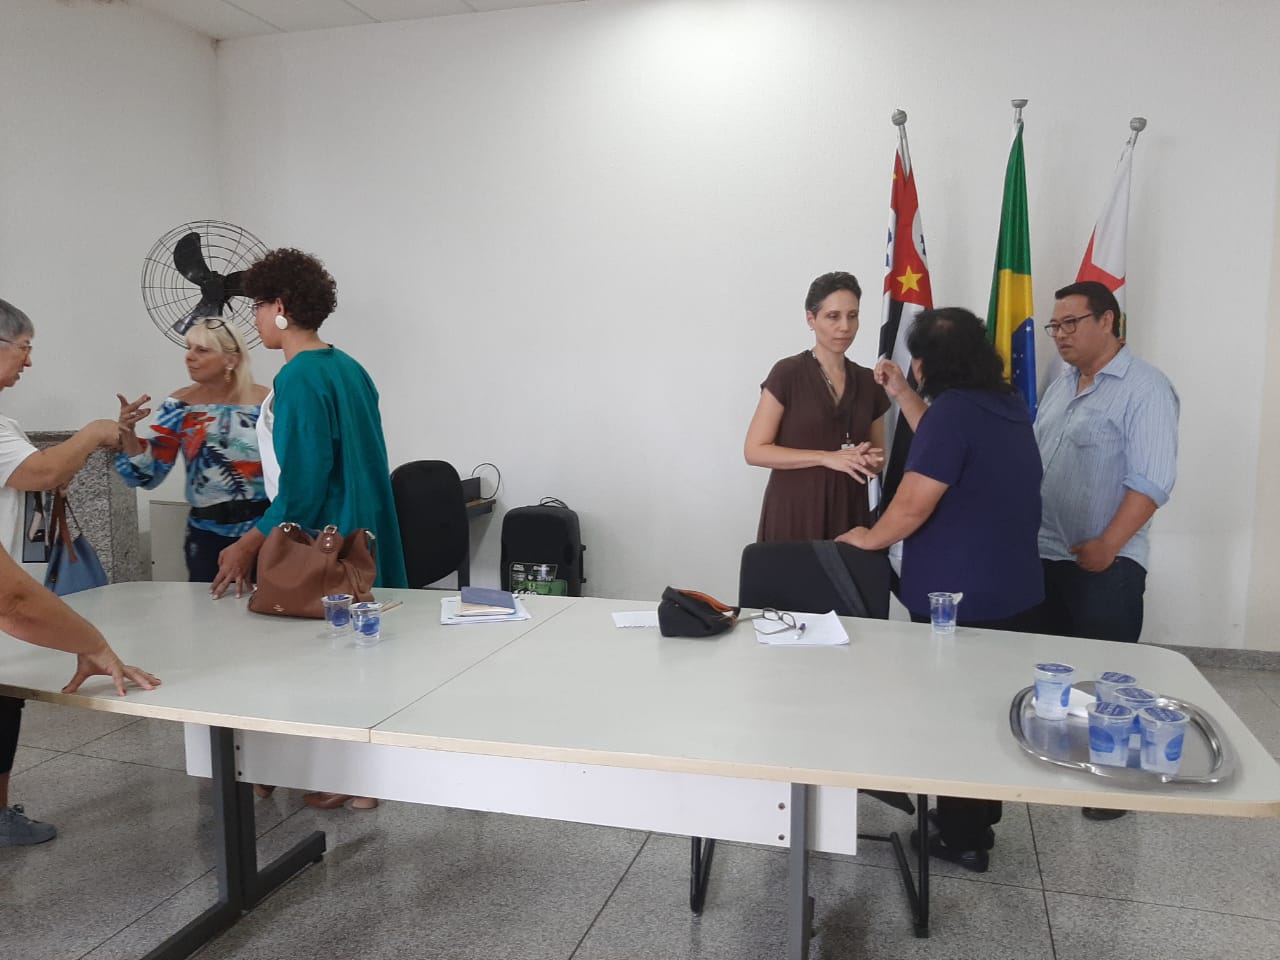 Imagem de dois grupos de três pessoas cada debatendo o projeto atrás de uma mesa oval, com as bandeiras do Brasil e Estado de São Paulo ao fundo